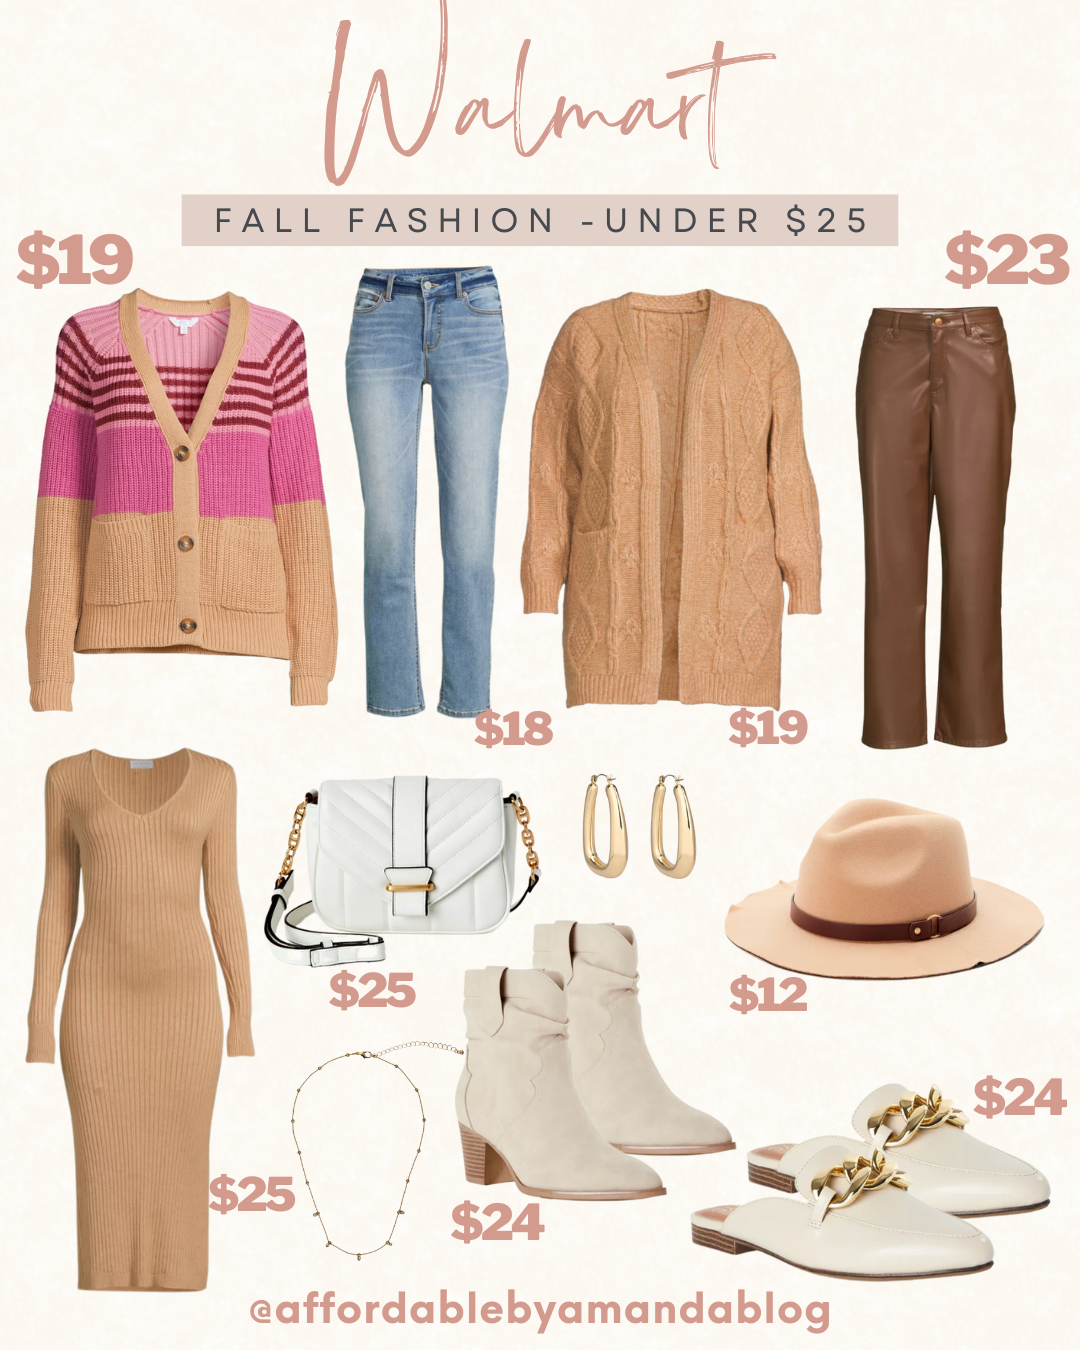 Walmart Fall Fashion Finds Under $25 - Affordable by Amanda